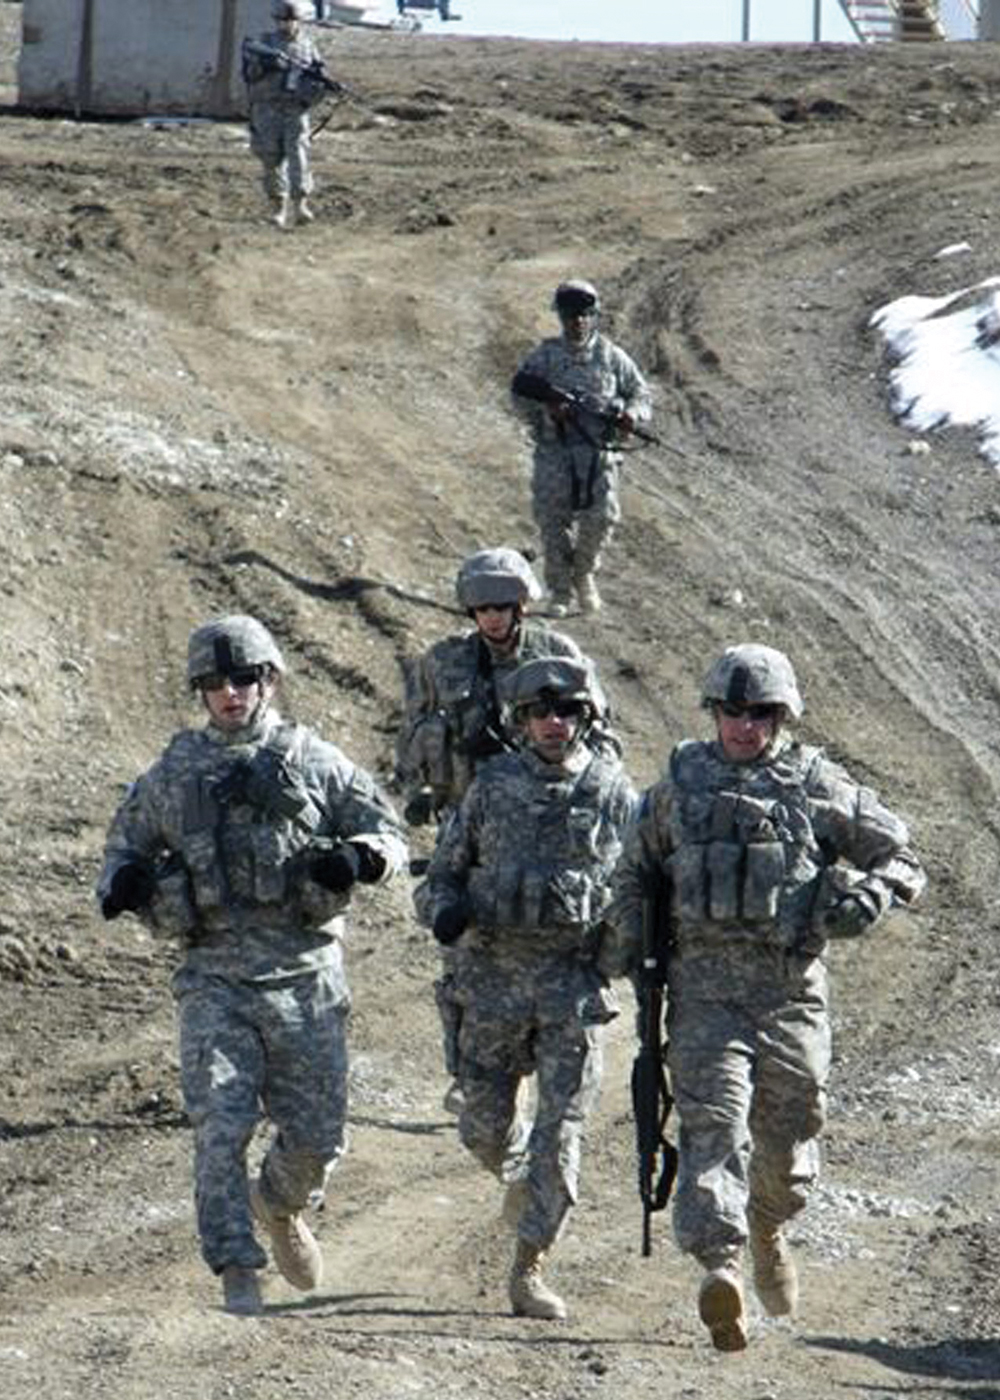 Líderes de la Fuerza de Tarea Brawler, de la 3a Brigada de Aviación de Combate, Fuerza de Tarea Falcon, simulan el estrés antes de participar en ensayos de fuego reflexivos en el polígono de tiro de armas de pequeño calibre en la Base Operacional Avanzada Shank, Afganistán, 19 de febrero de 2009. (Ejército de EUA, Sgto. Scott Tant)